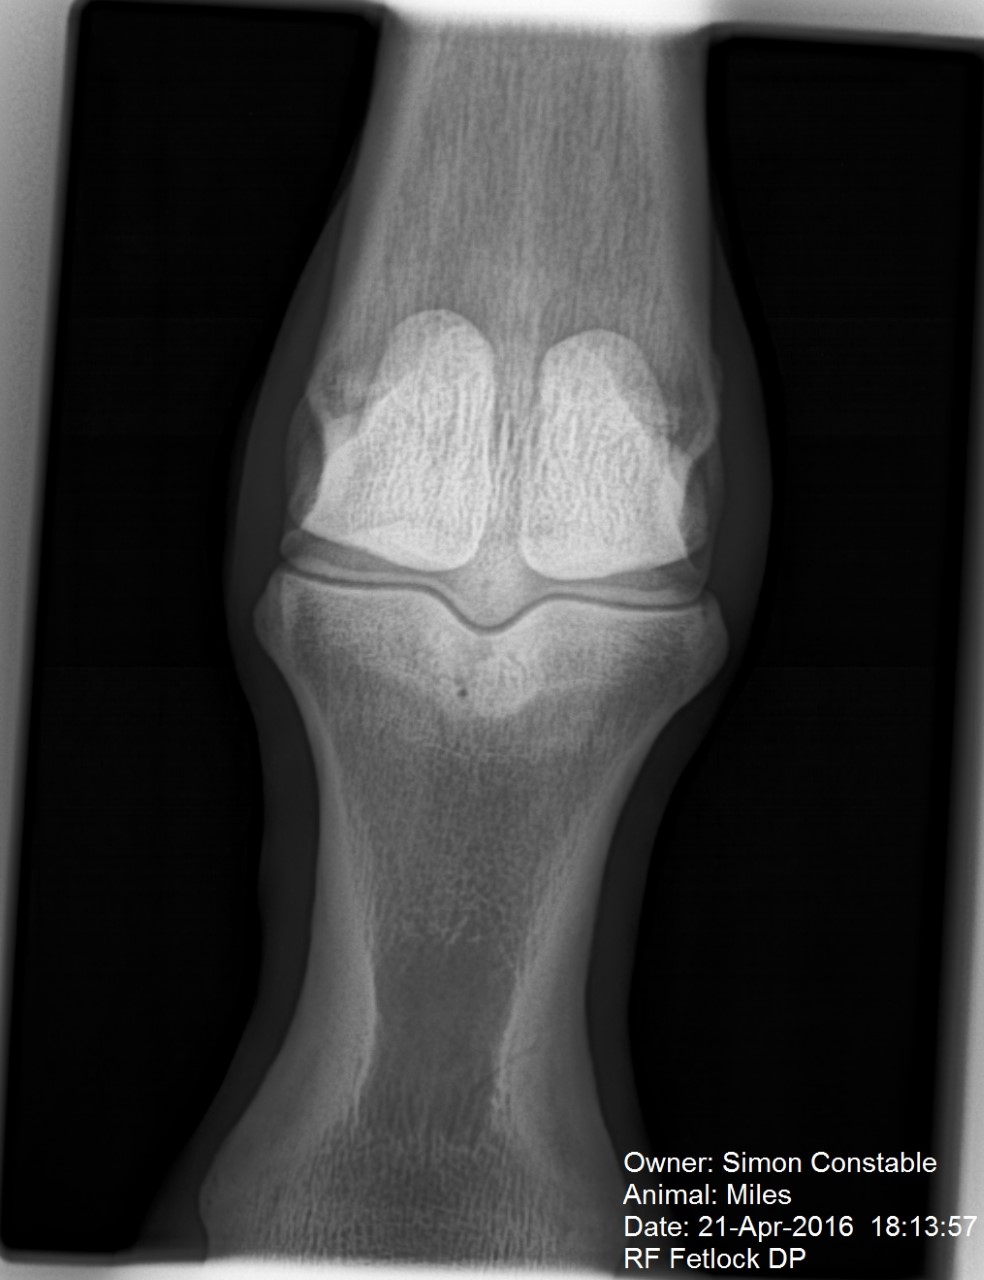 bone bruising around the knee